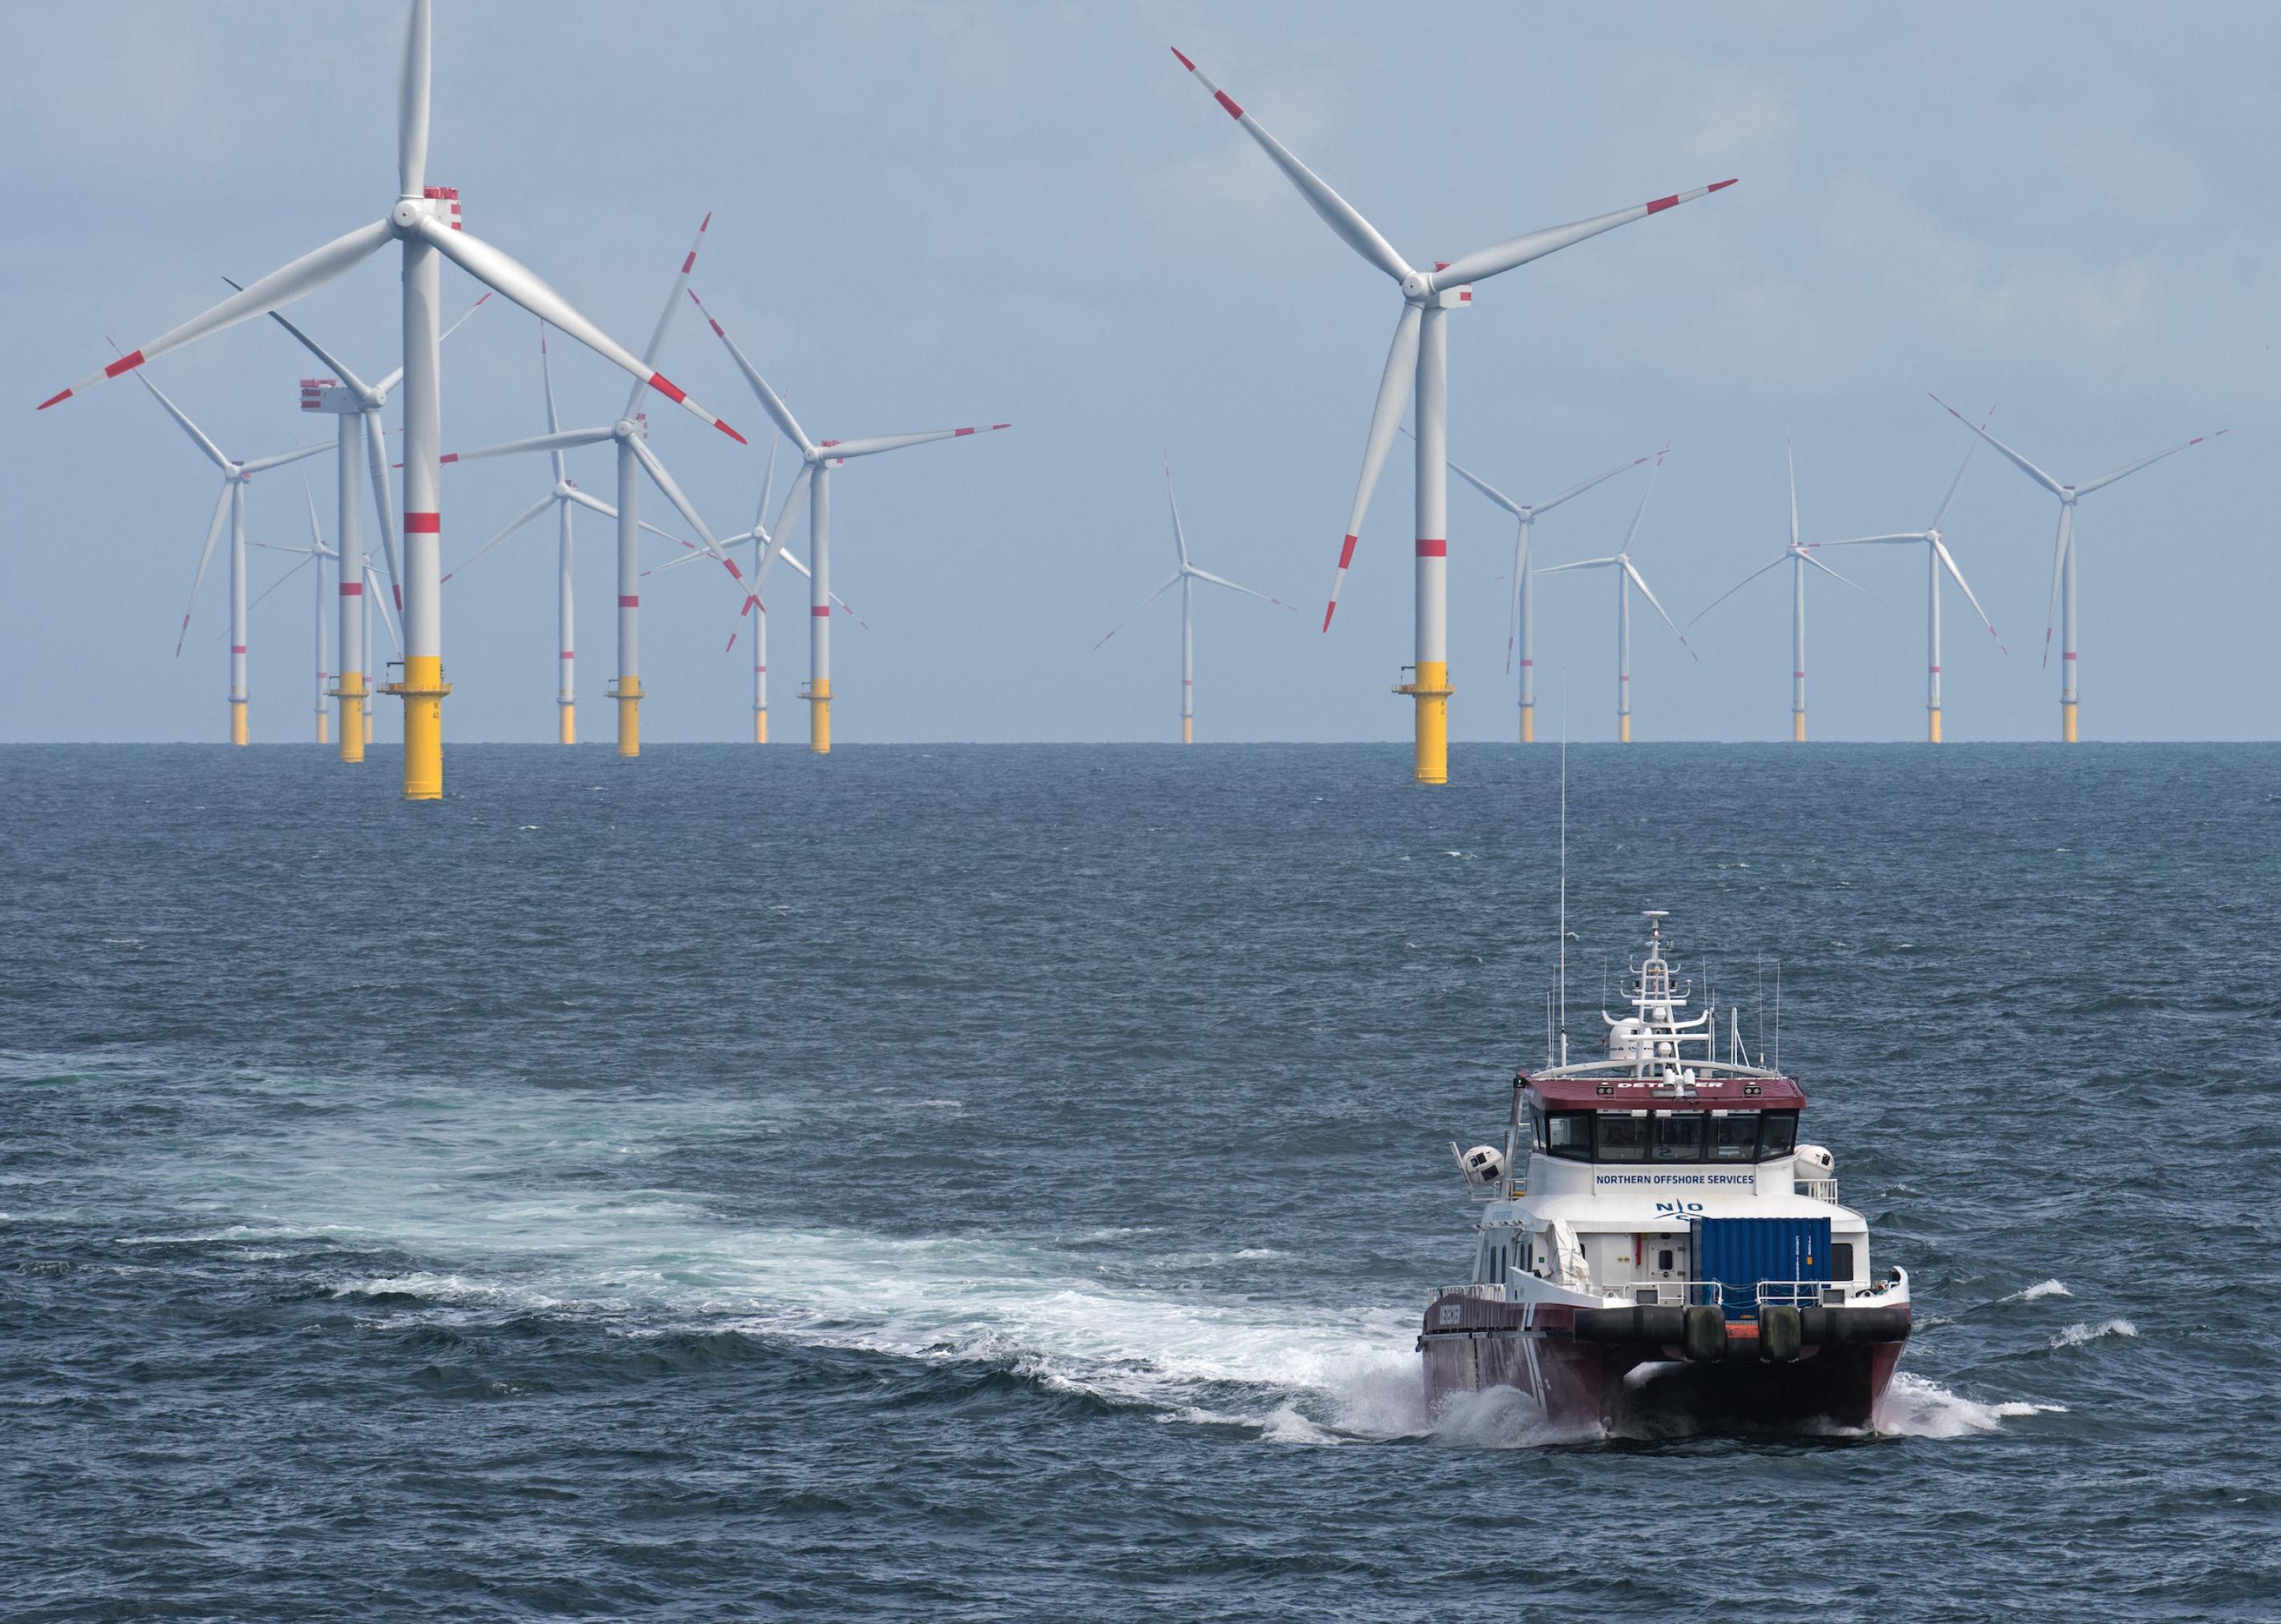 Windkraftanlagen im Meer, im Vordergrund ein Serviceboot.